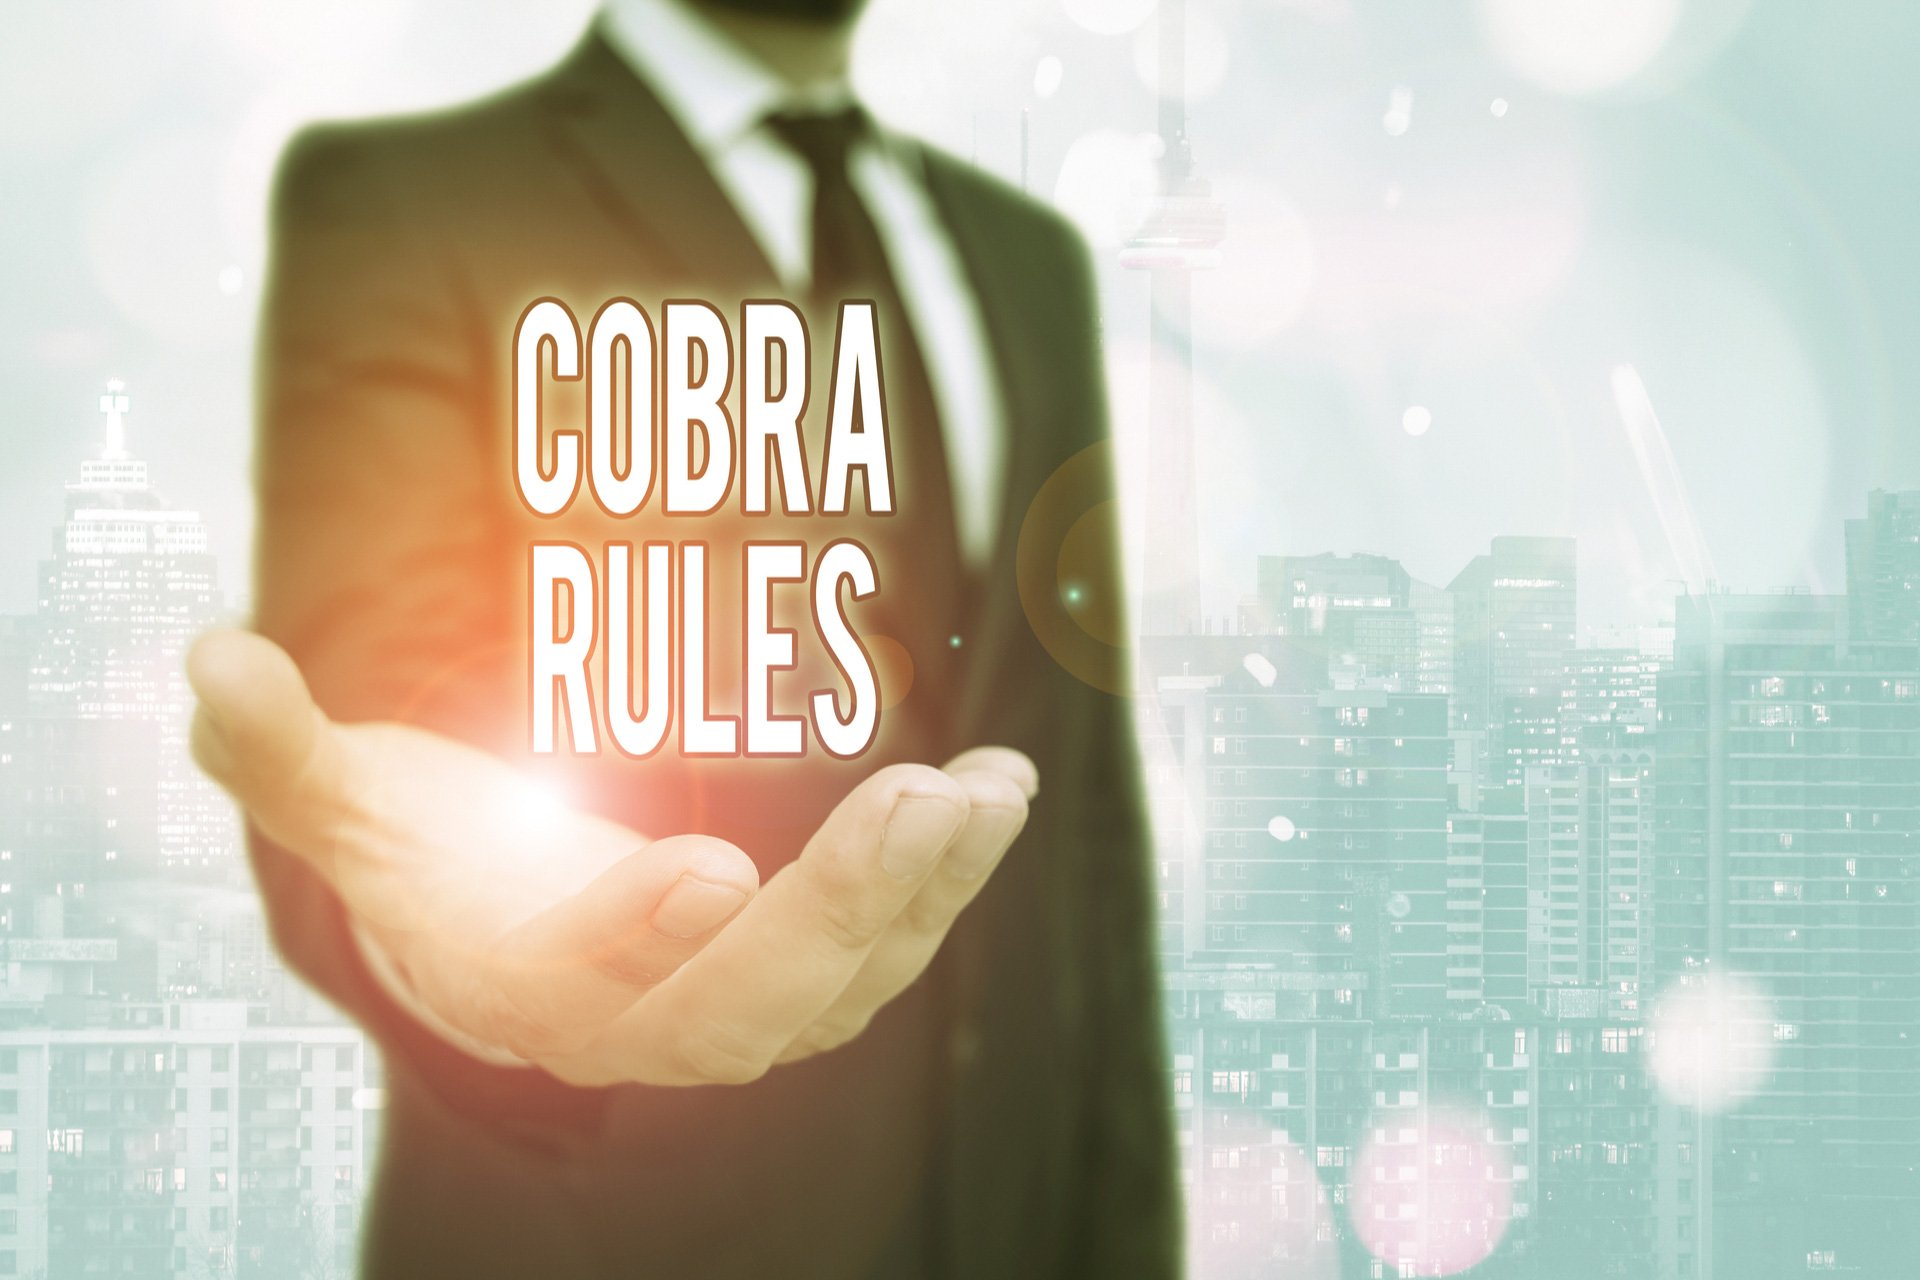 COBRA rules